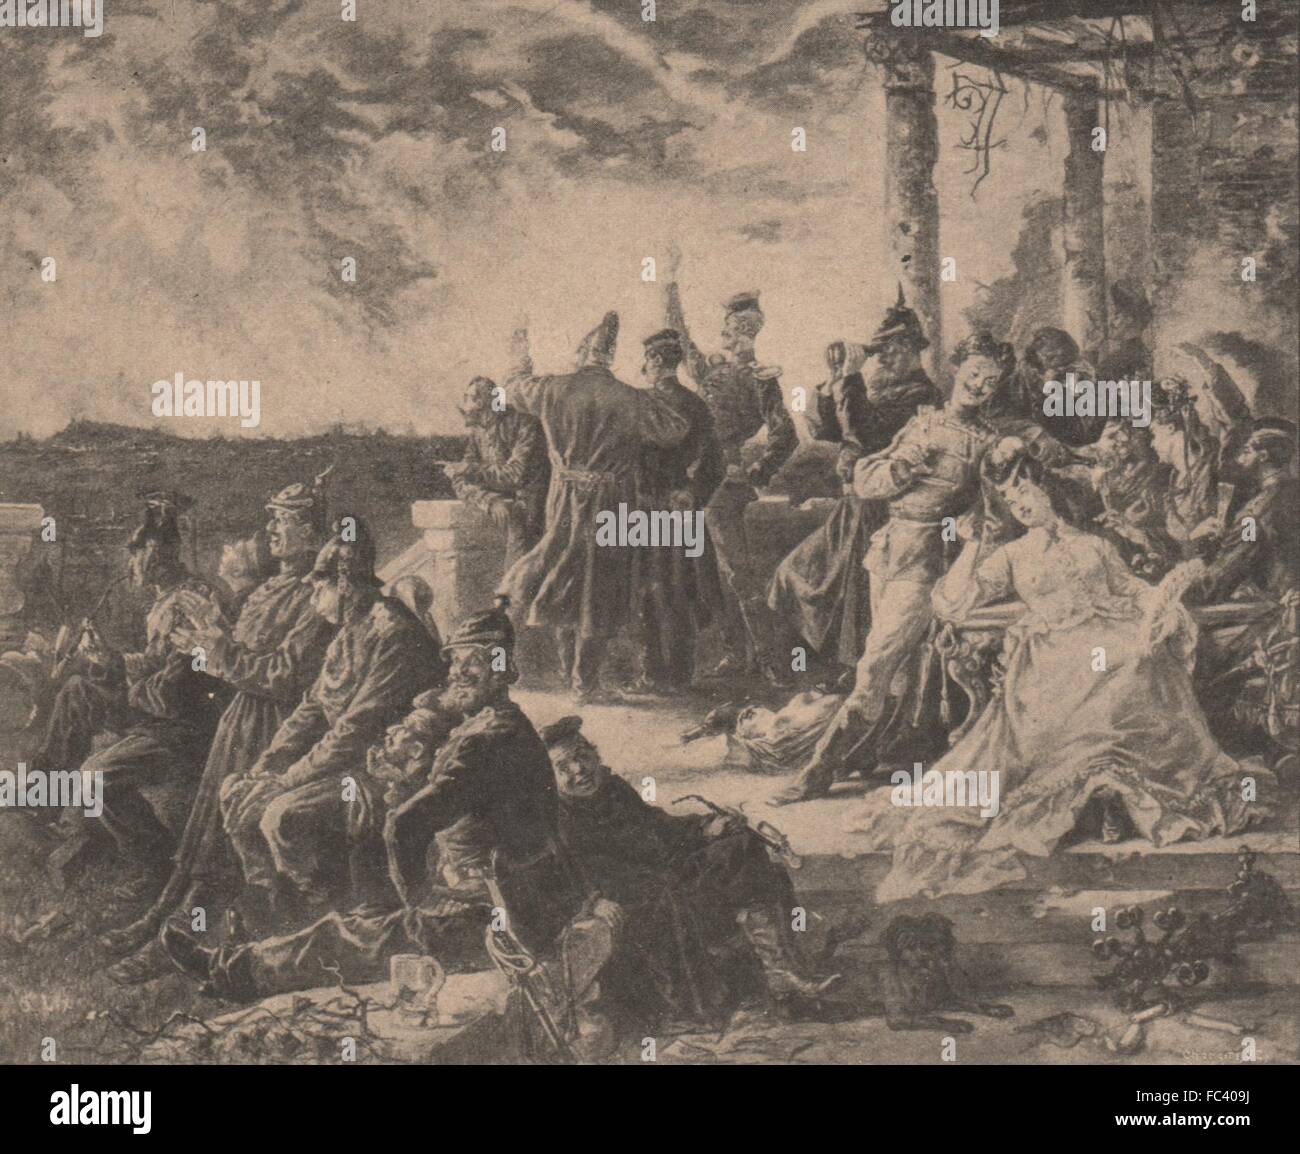 PARIS KOMMUNE 1871. Les Prussiens Boivent À l'Anéantissement de Paris, c1873 Stockfoto